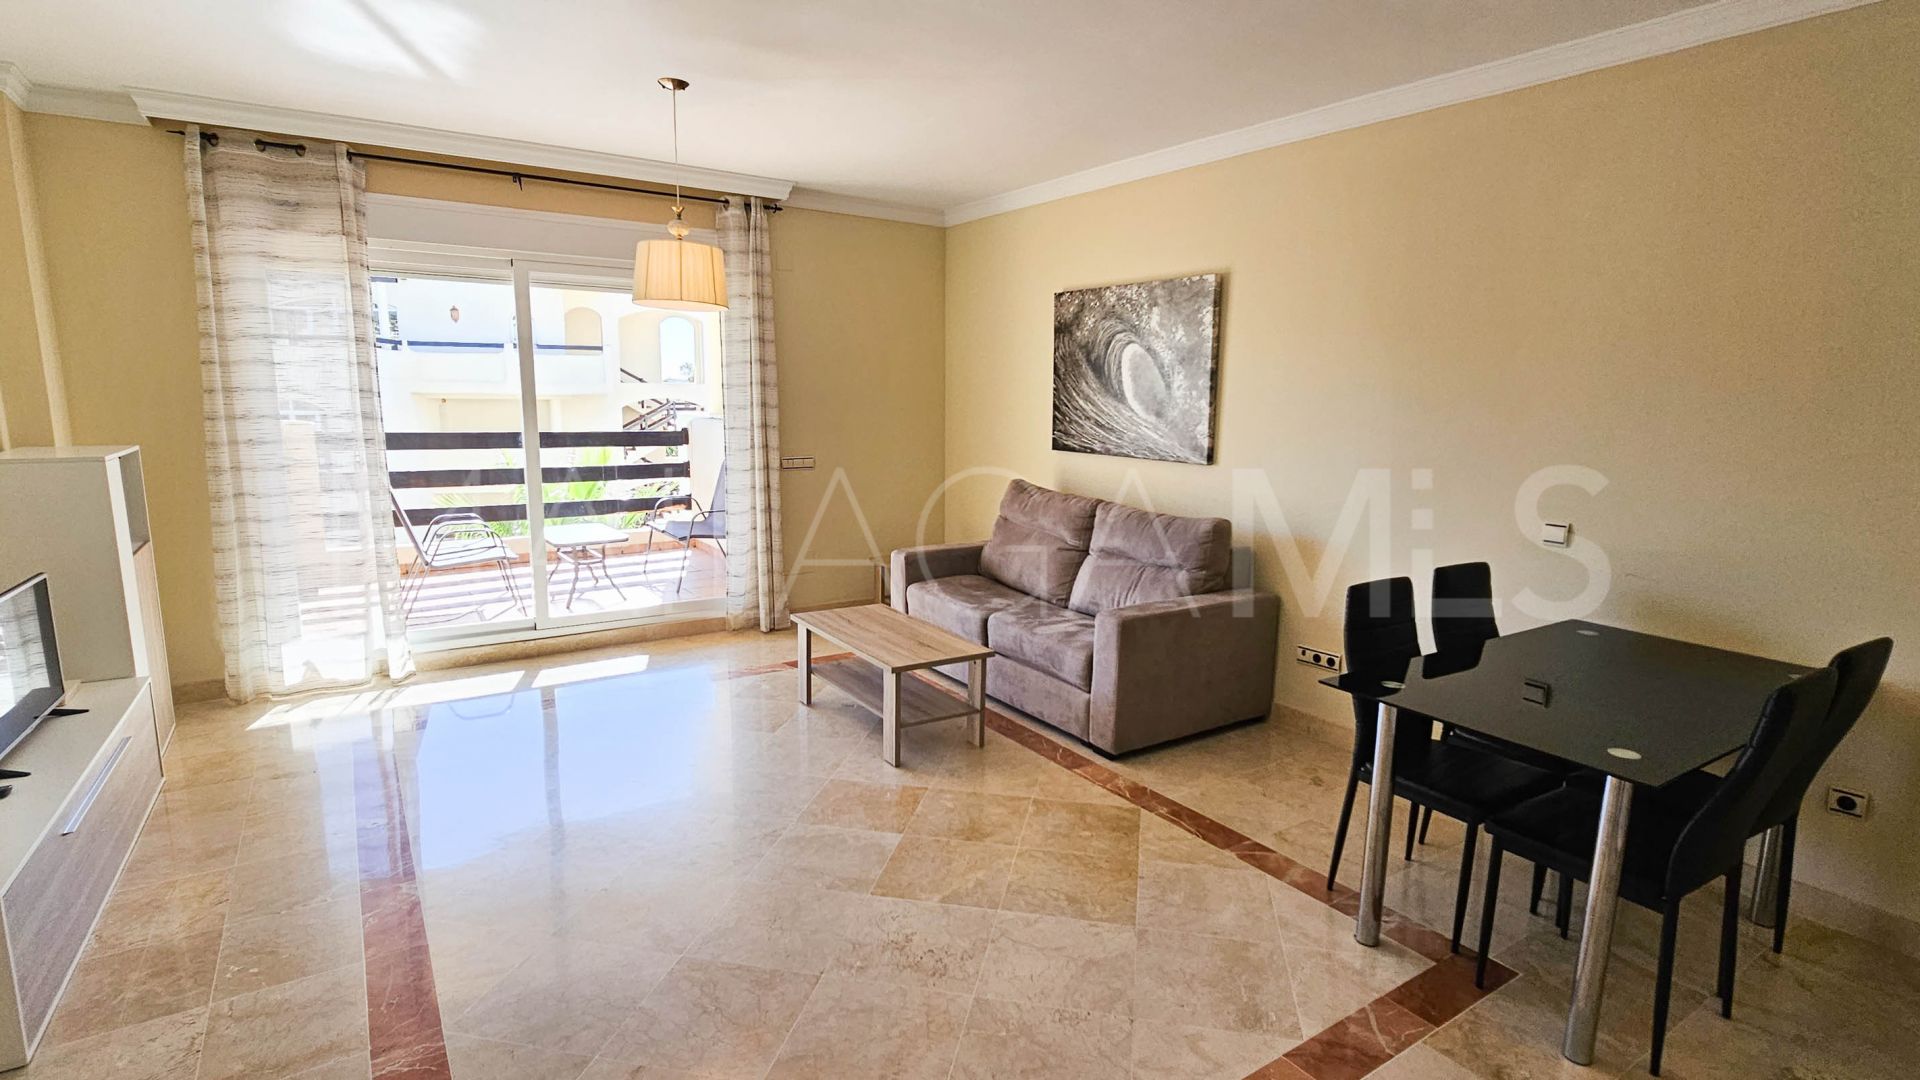 For sale San Pedro de Alcantara 1 bedroom apartment